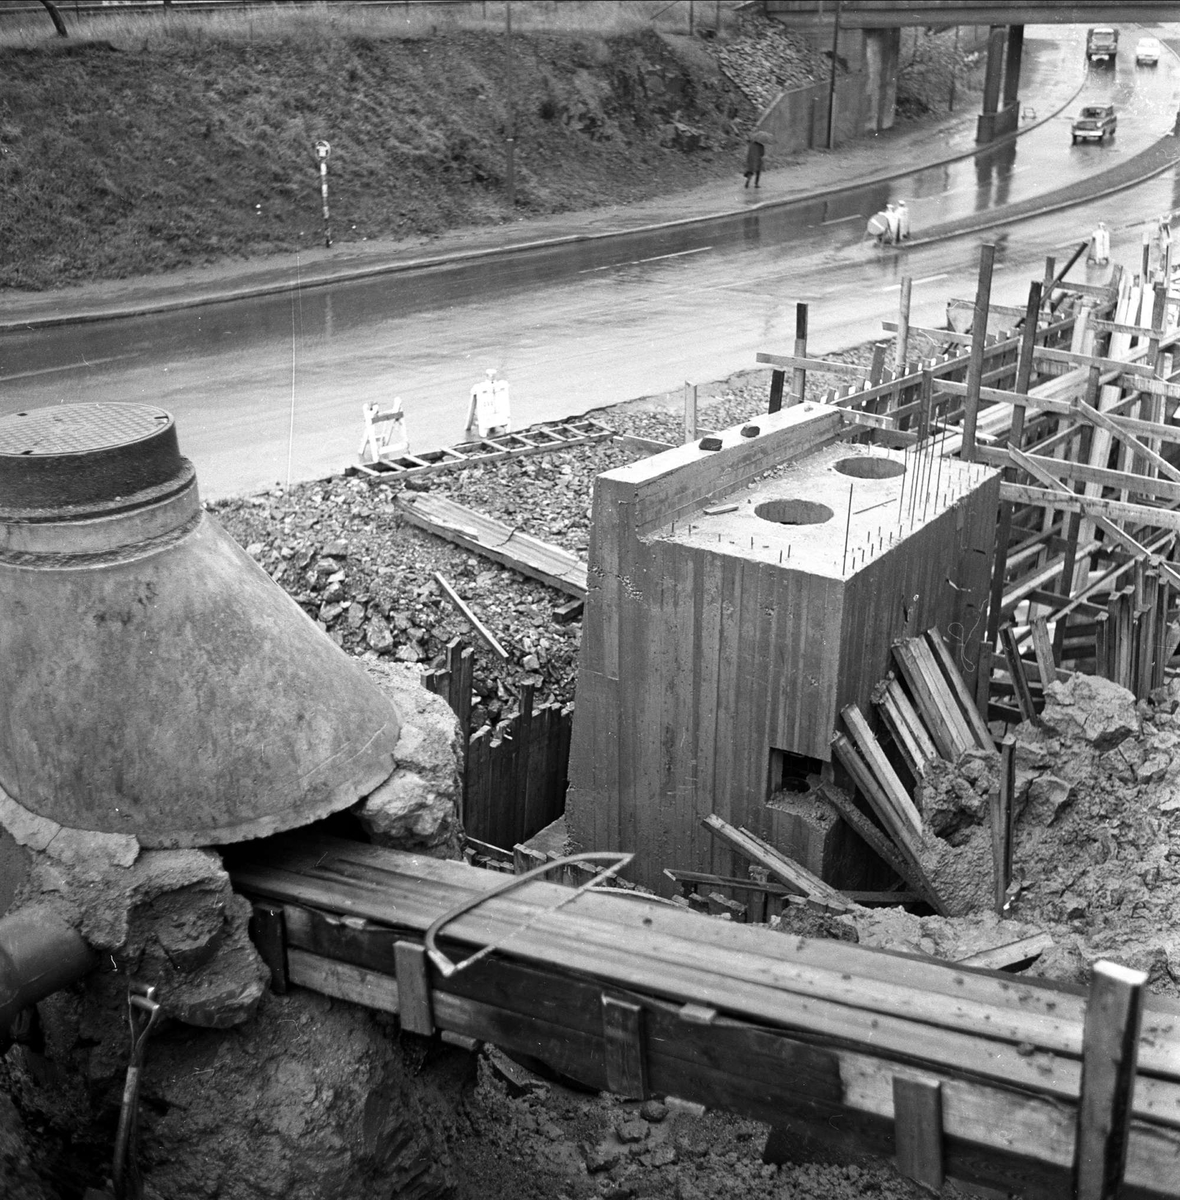 Byggetomt med septikktank  Vei. 1964.